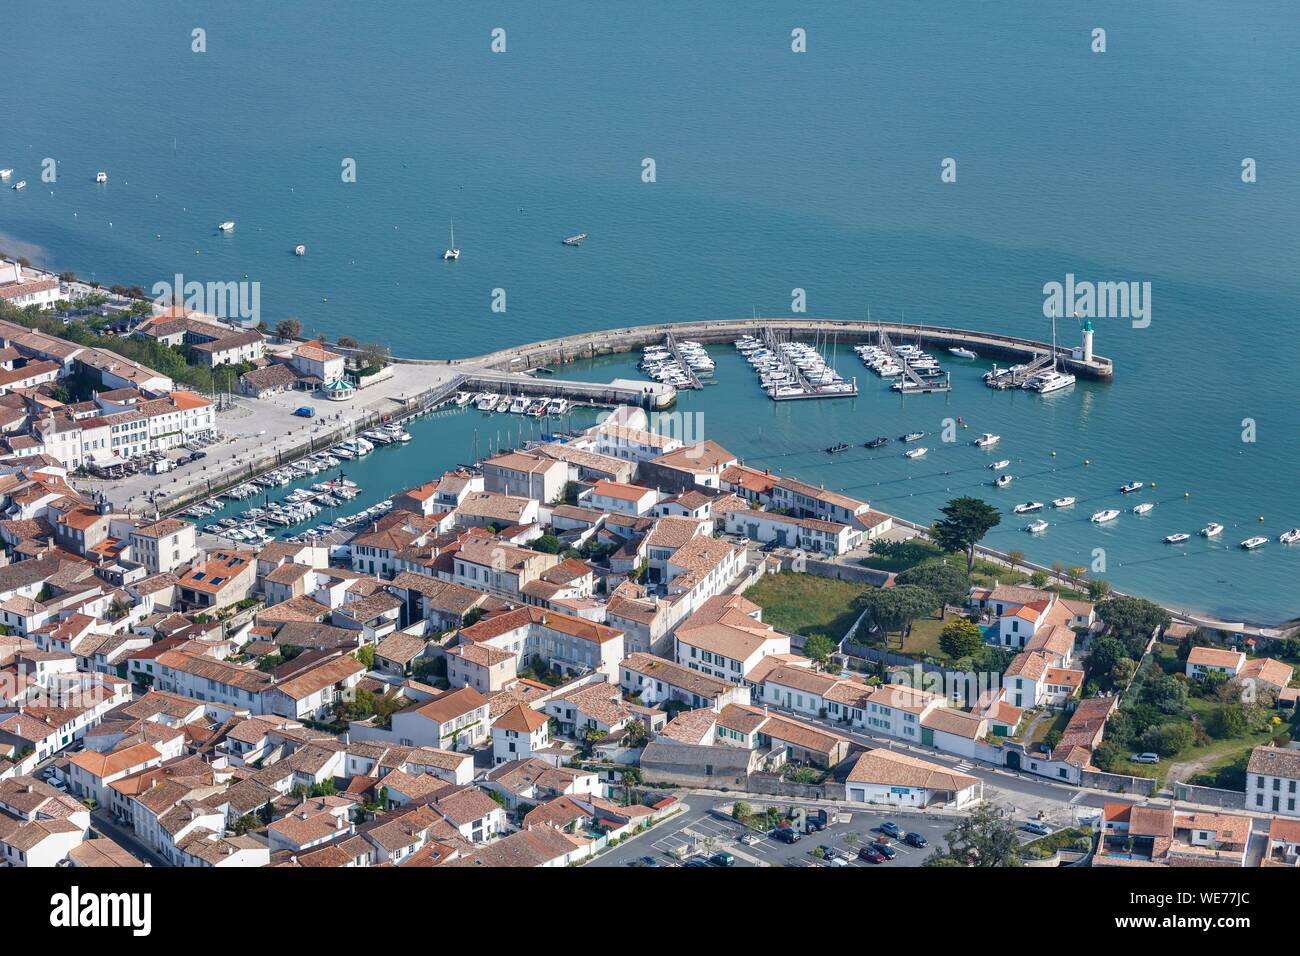 Francia, Charente Maritime, La flotte, etichettati Les Plus Beaux Villages de France (i più bei villaggi di Francia), il villaggio e il porto (vista aerea) Foto Stock